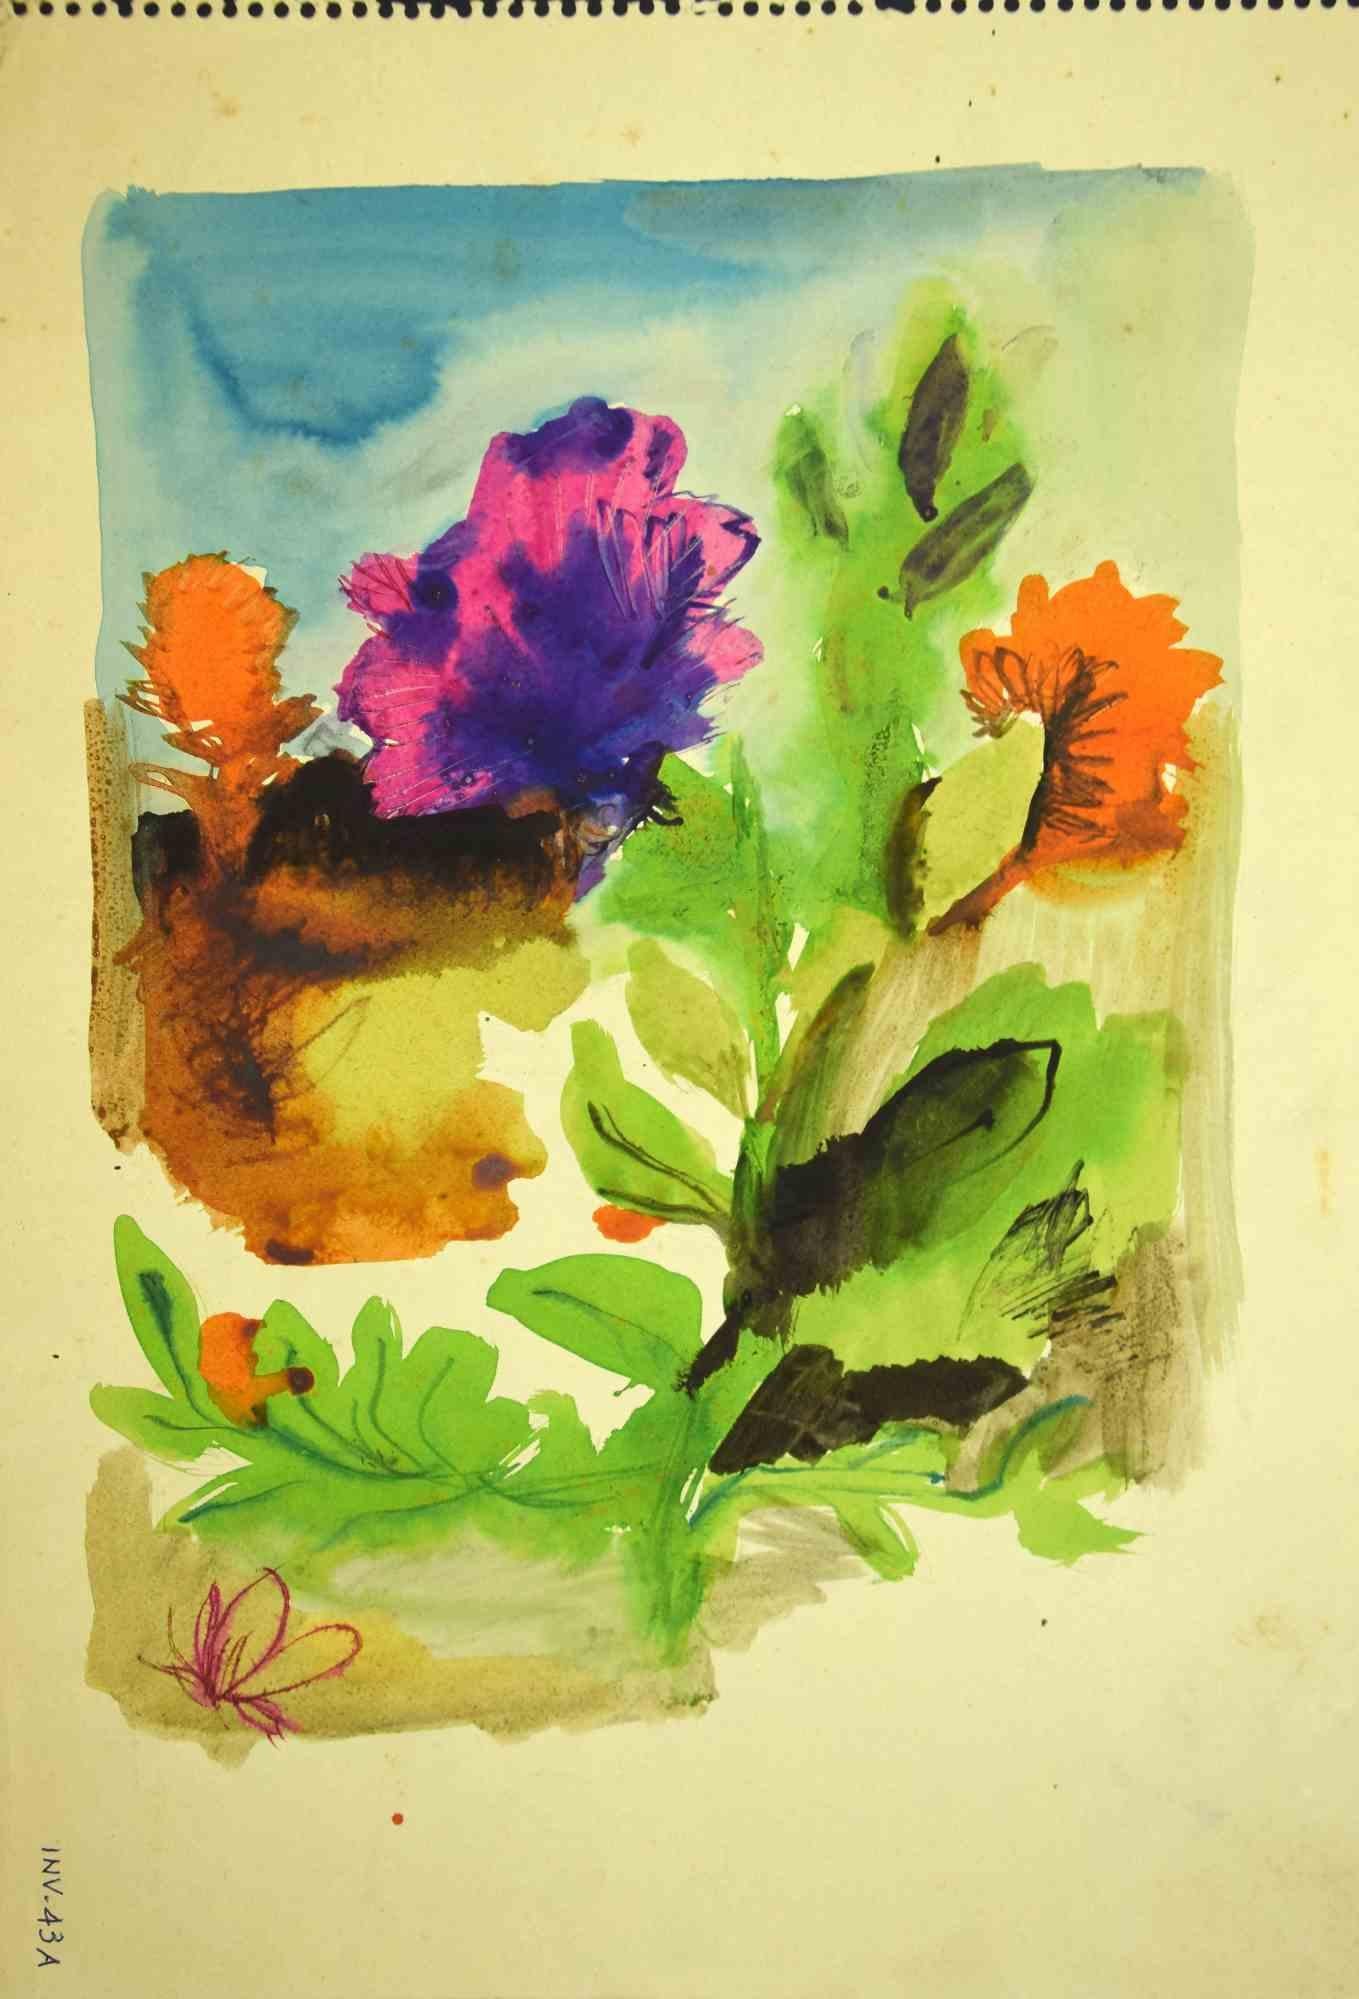 Plants and Flowers ist eine Original-Aquarellzeichnung von Leo Guida aus den 1970er Jahren.

Guter Zustand bis auf einige Stockflecken und verbrauchte Ränder.

Das Kunstwerk wird durch kräftige Striche mit perfekten Schraffuren dargestellt.